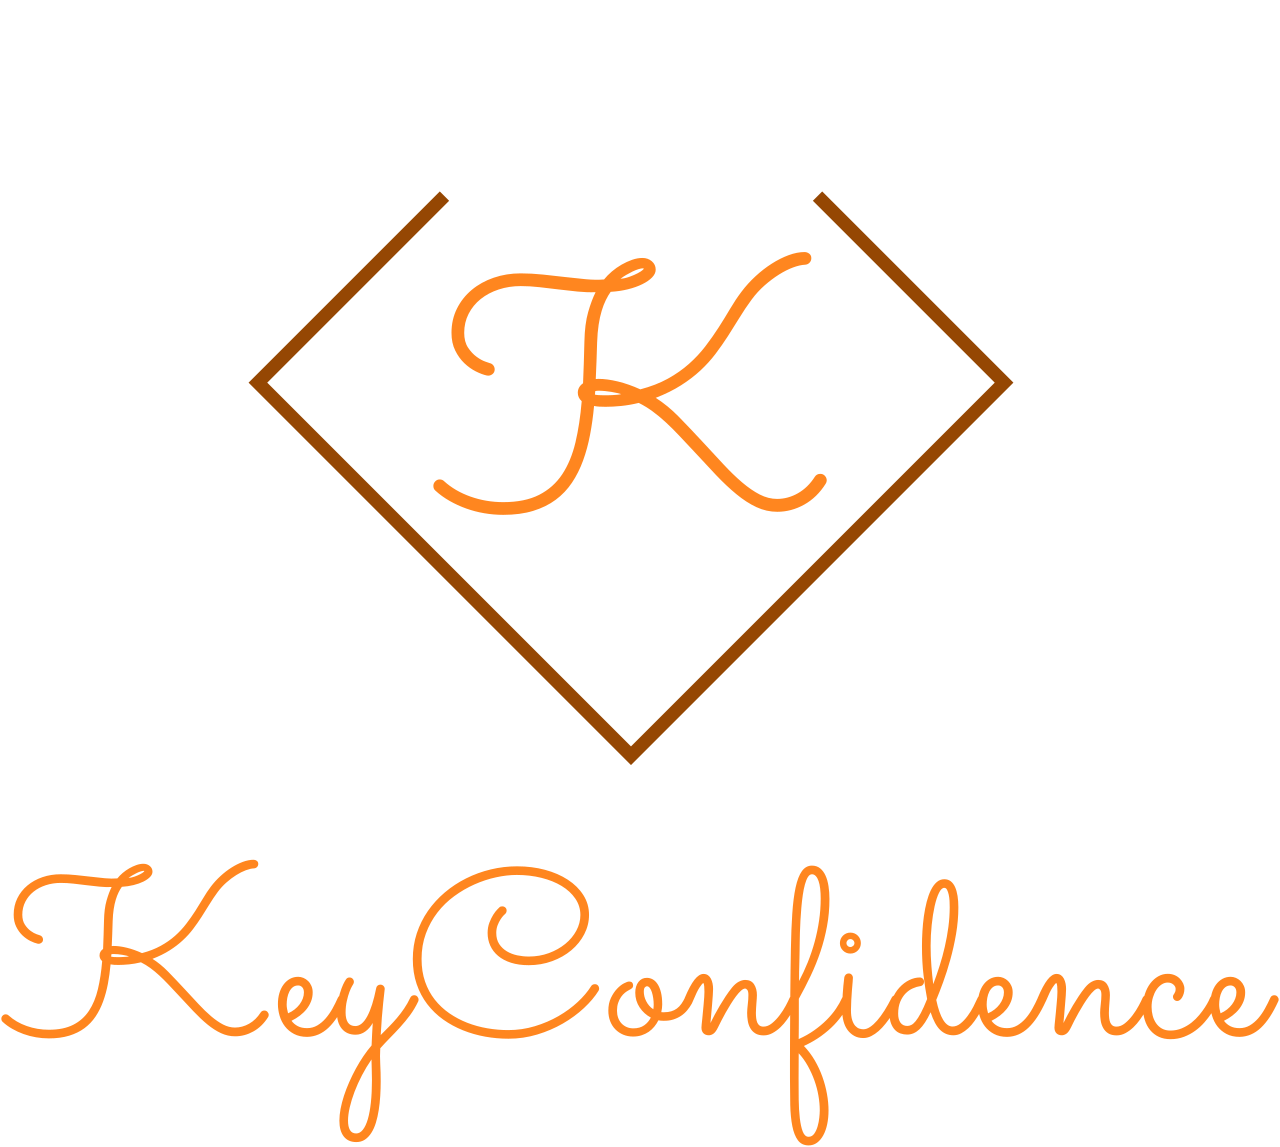 KeyConfidence's logo